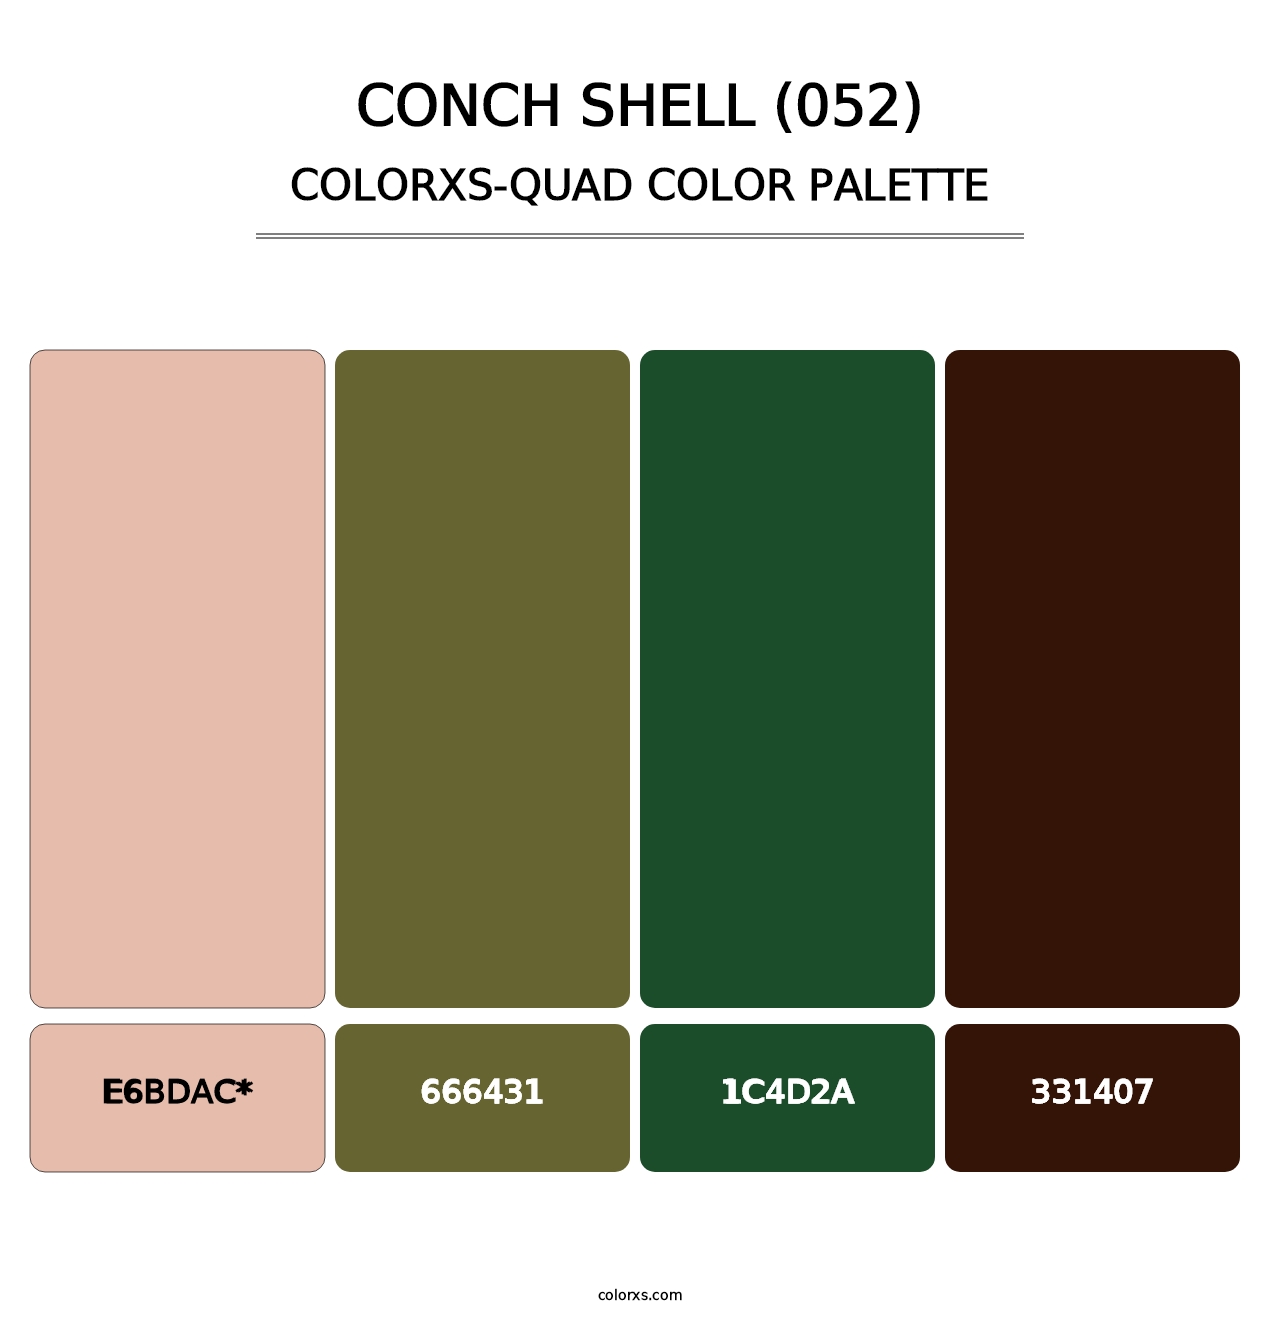 Conch Shell (052) - Colorxs Quad Palette